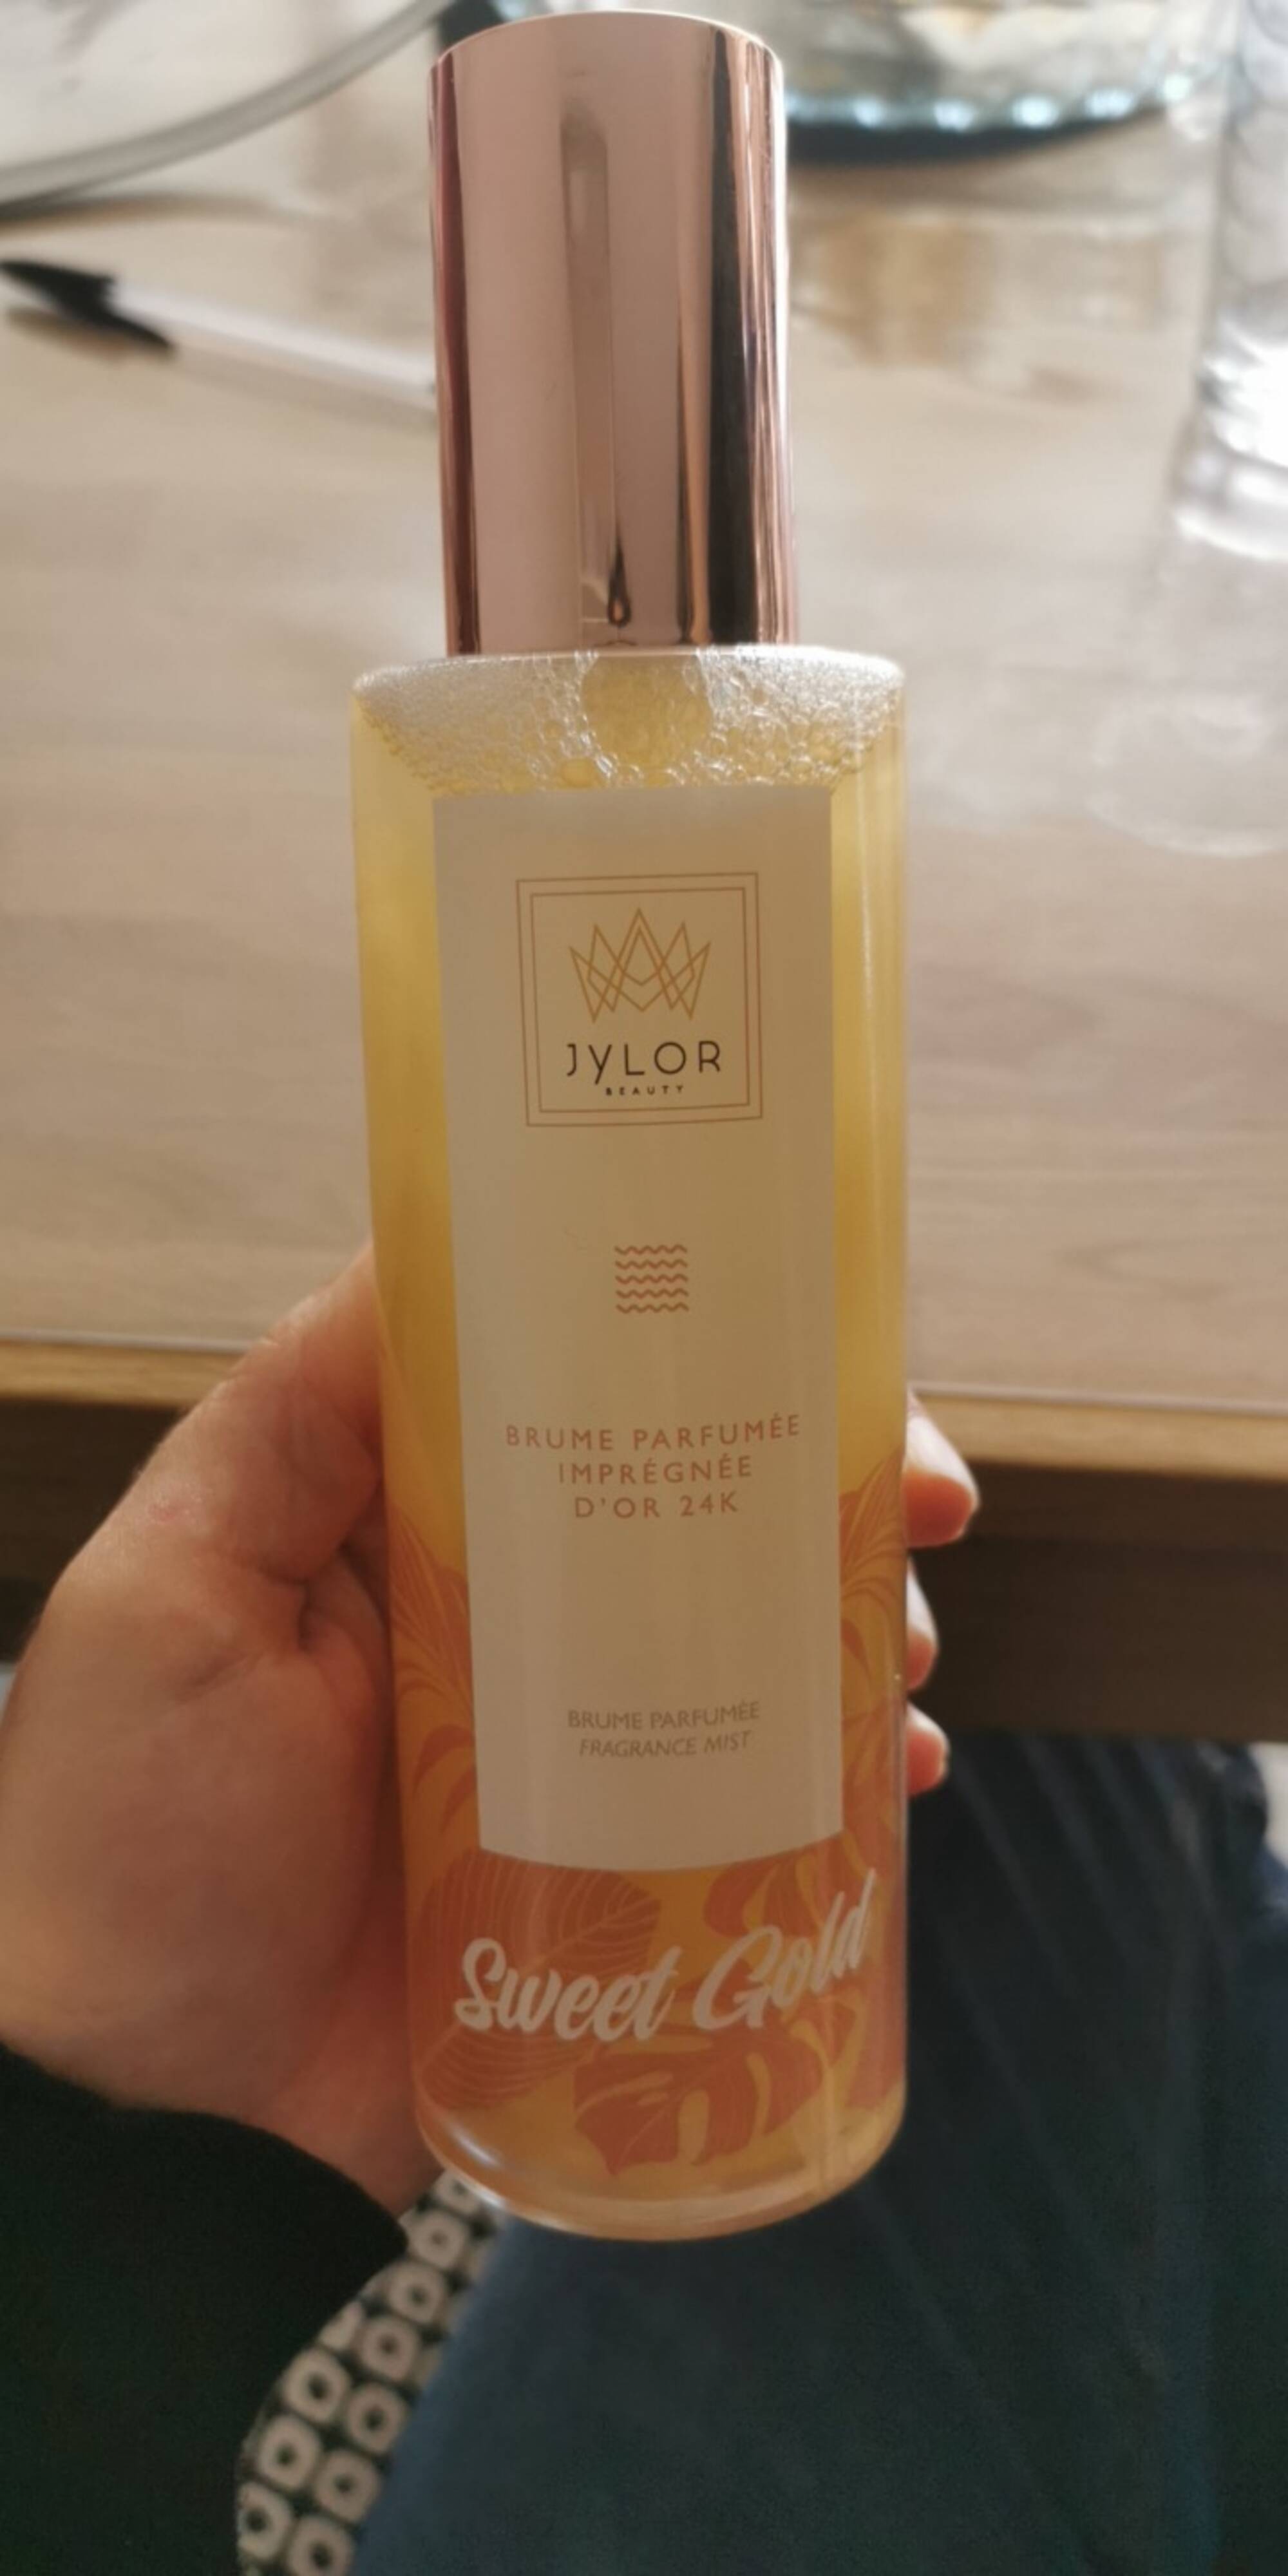 JYLOR - Brume parfumée imprégnée d'or 24K